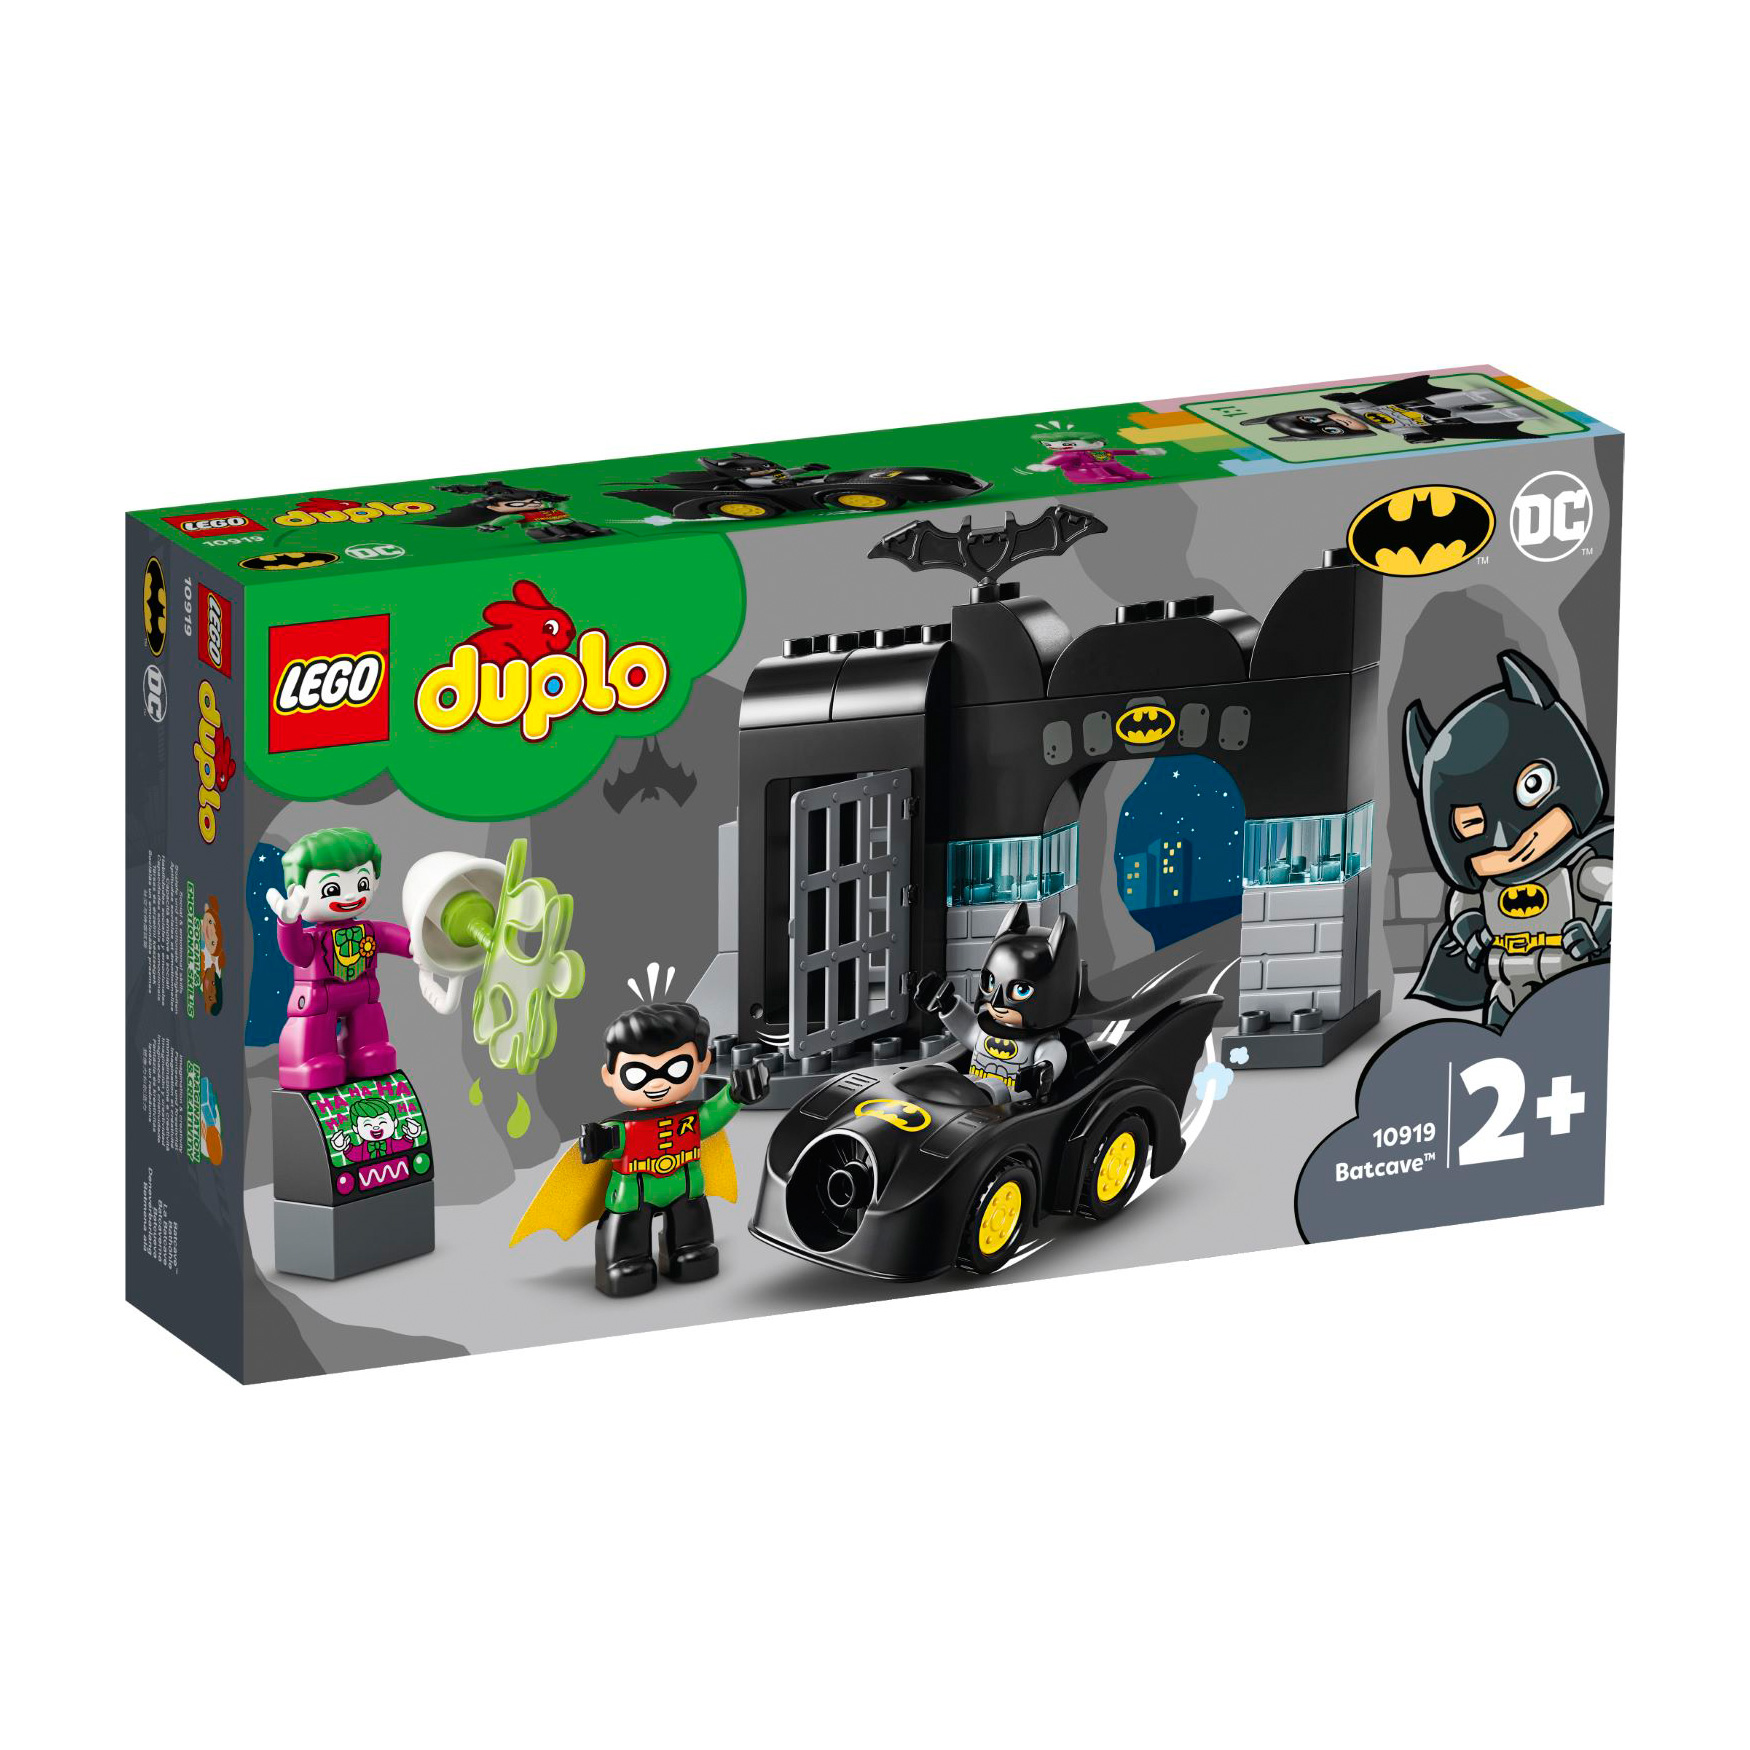 LEGO® DUPLO® 10919 Bathöhle günstig kaufen! | brickstore.at